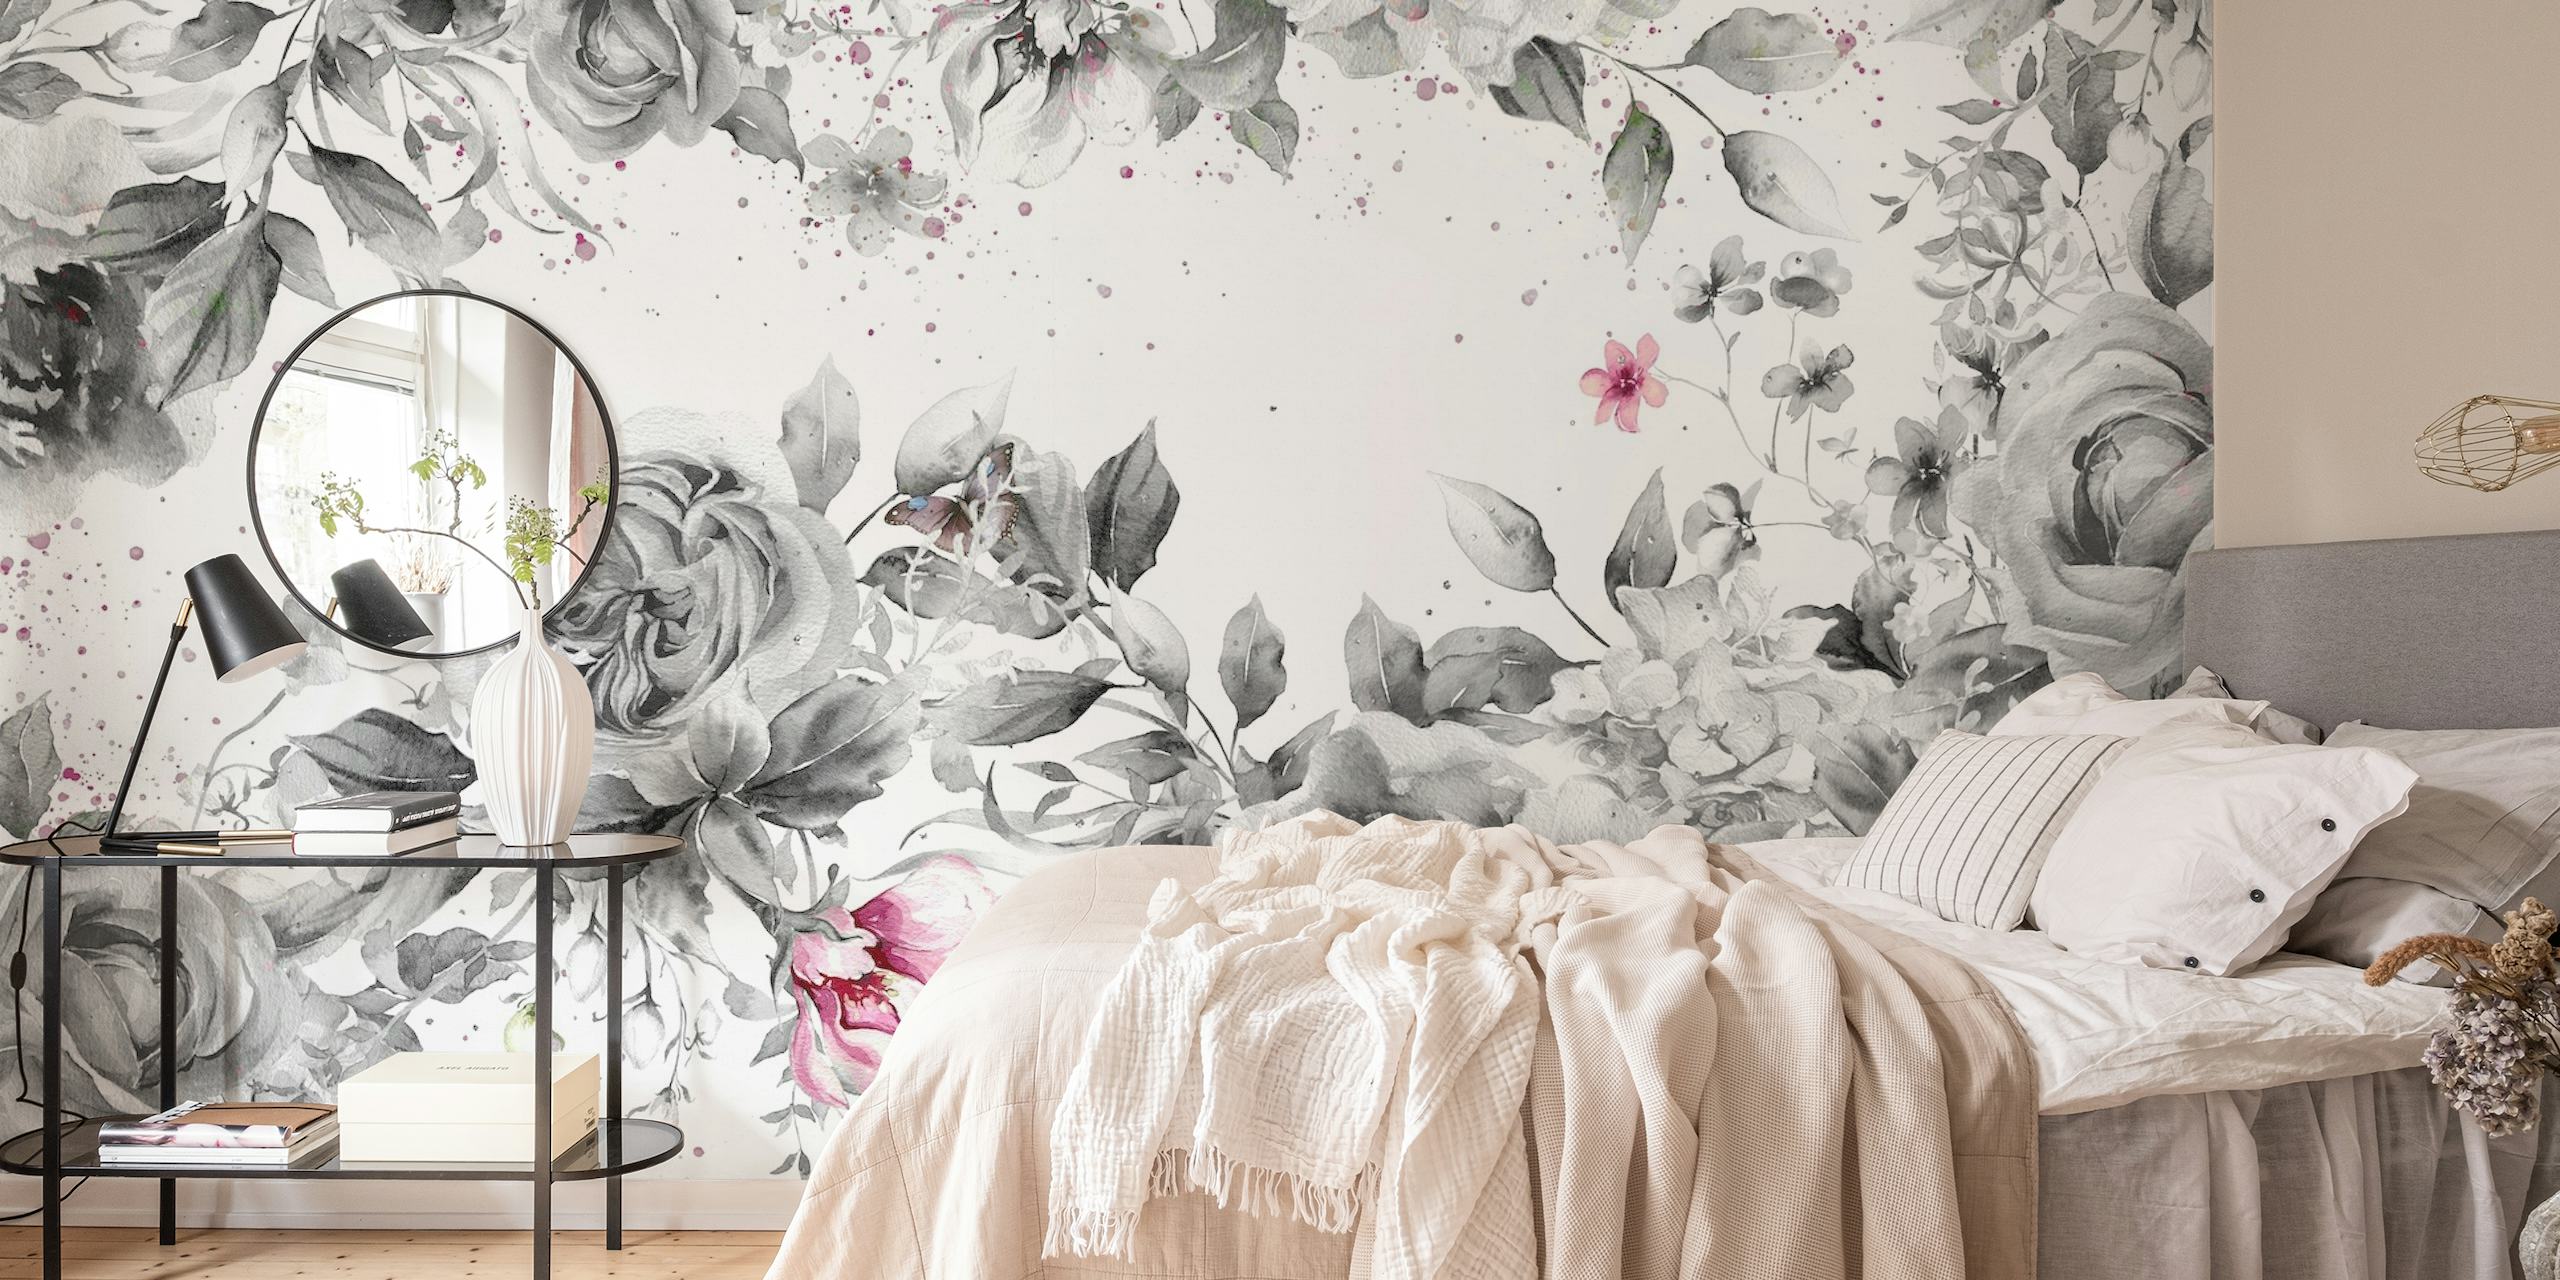 Tyylikäs hopeanvärinen kimaltelevaa ruusua sisältävä seinämaalaus, jossa on hienovaraisia värikohokohtia